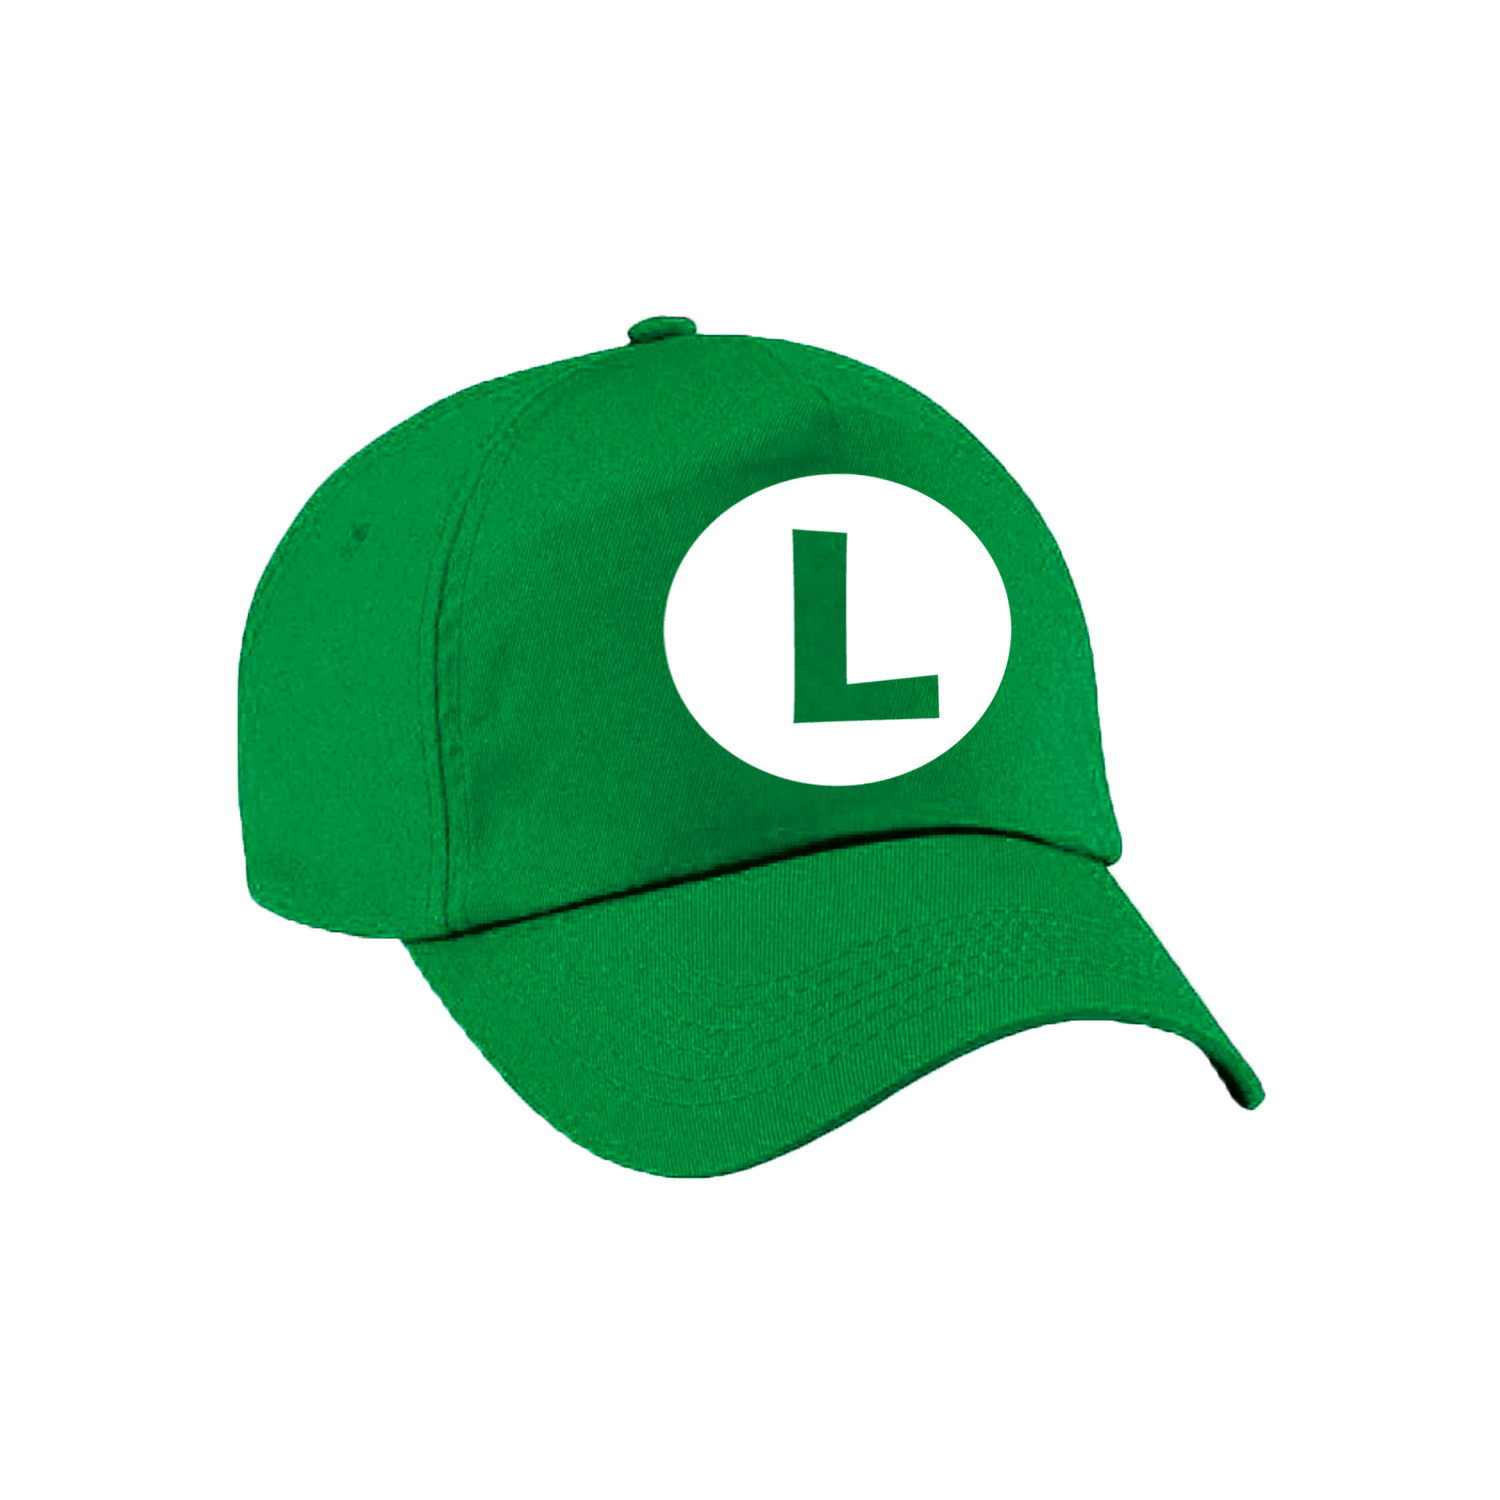 Verkleed pet / carnaval pet Luigi groen voor kinderen